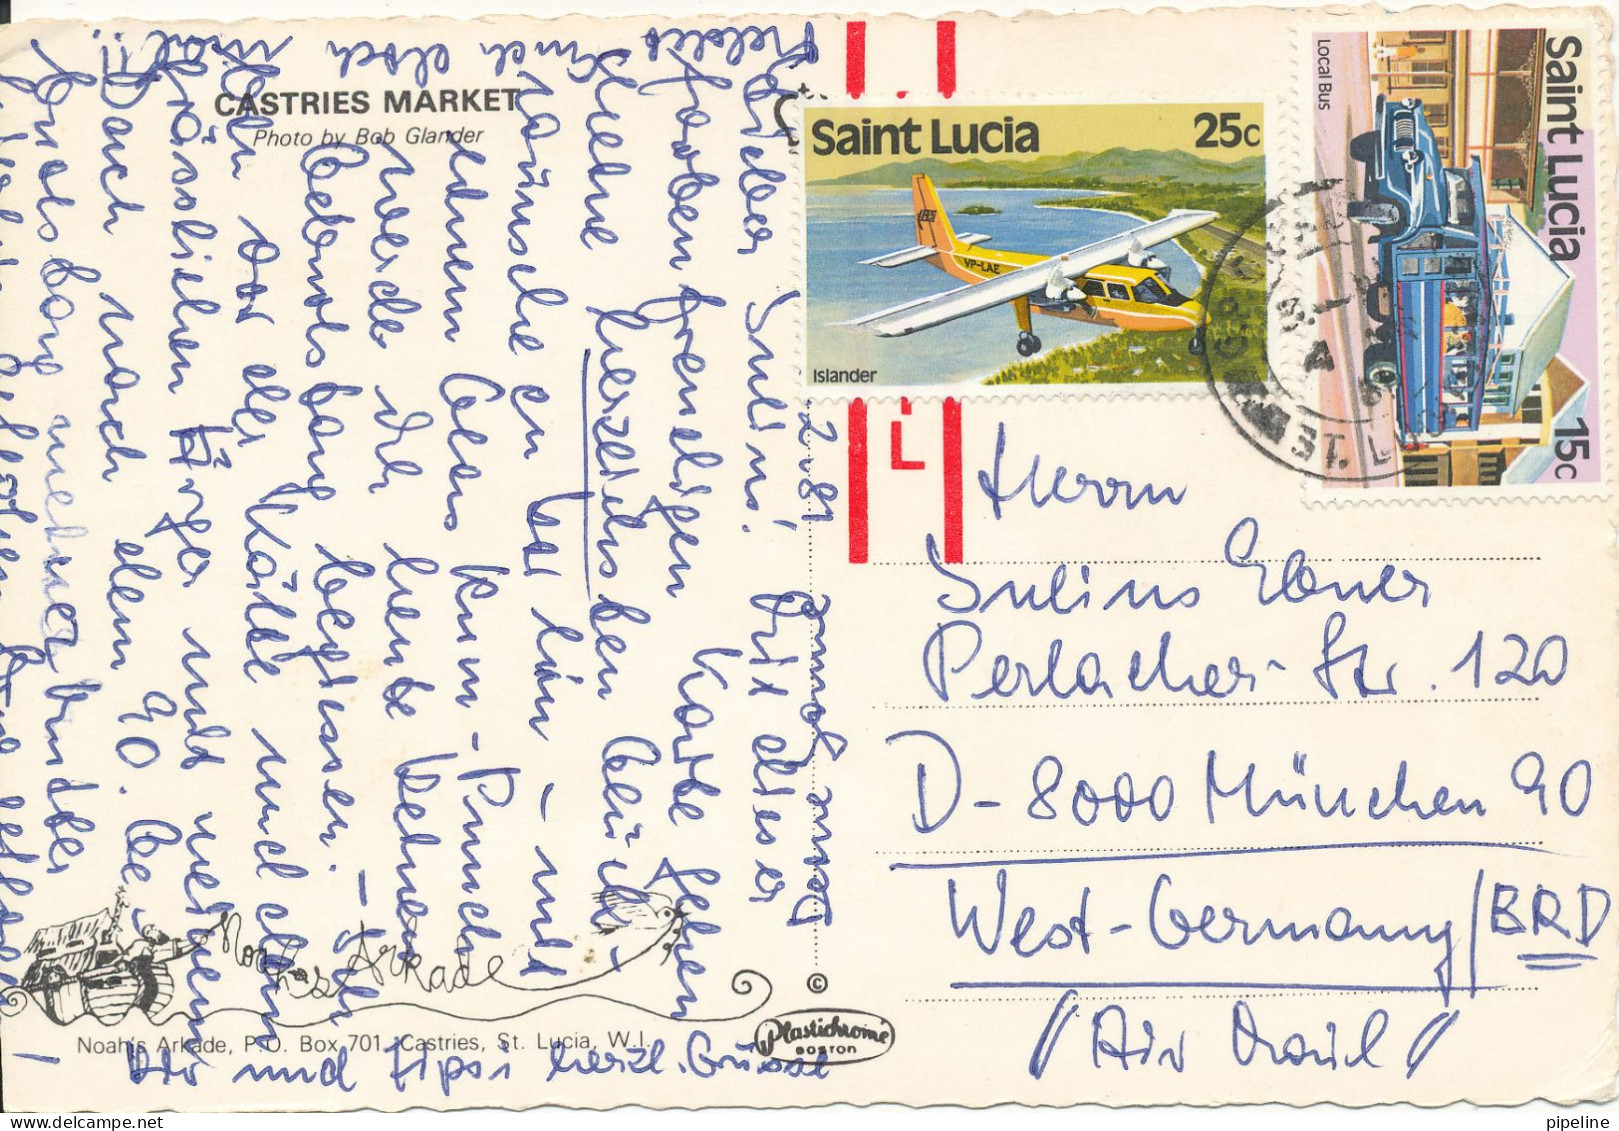 Saint Lucia Postcard Sent To Germany 1981 Castries Market - Sainte-Lucie